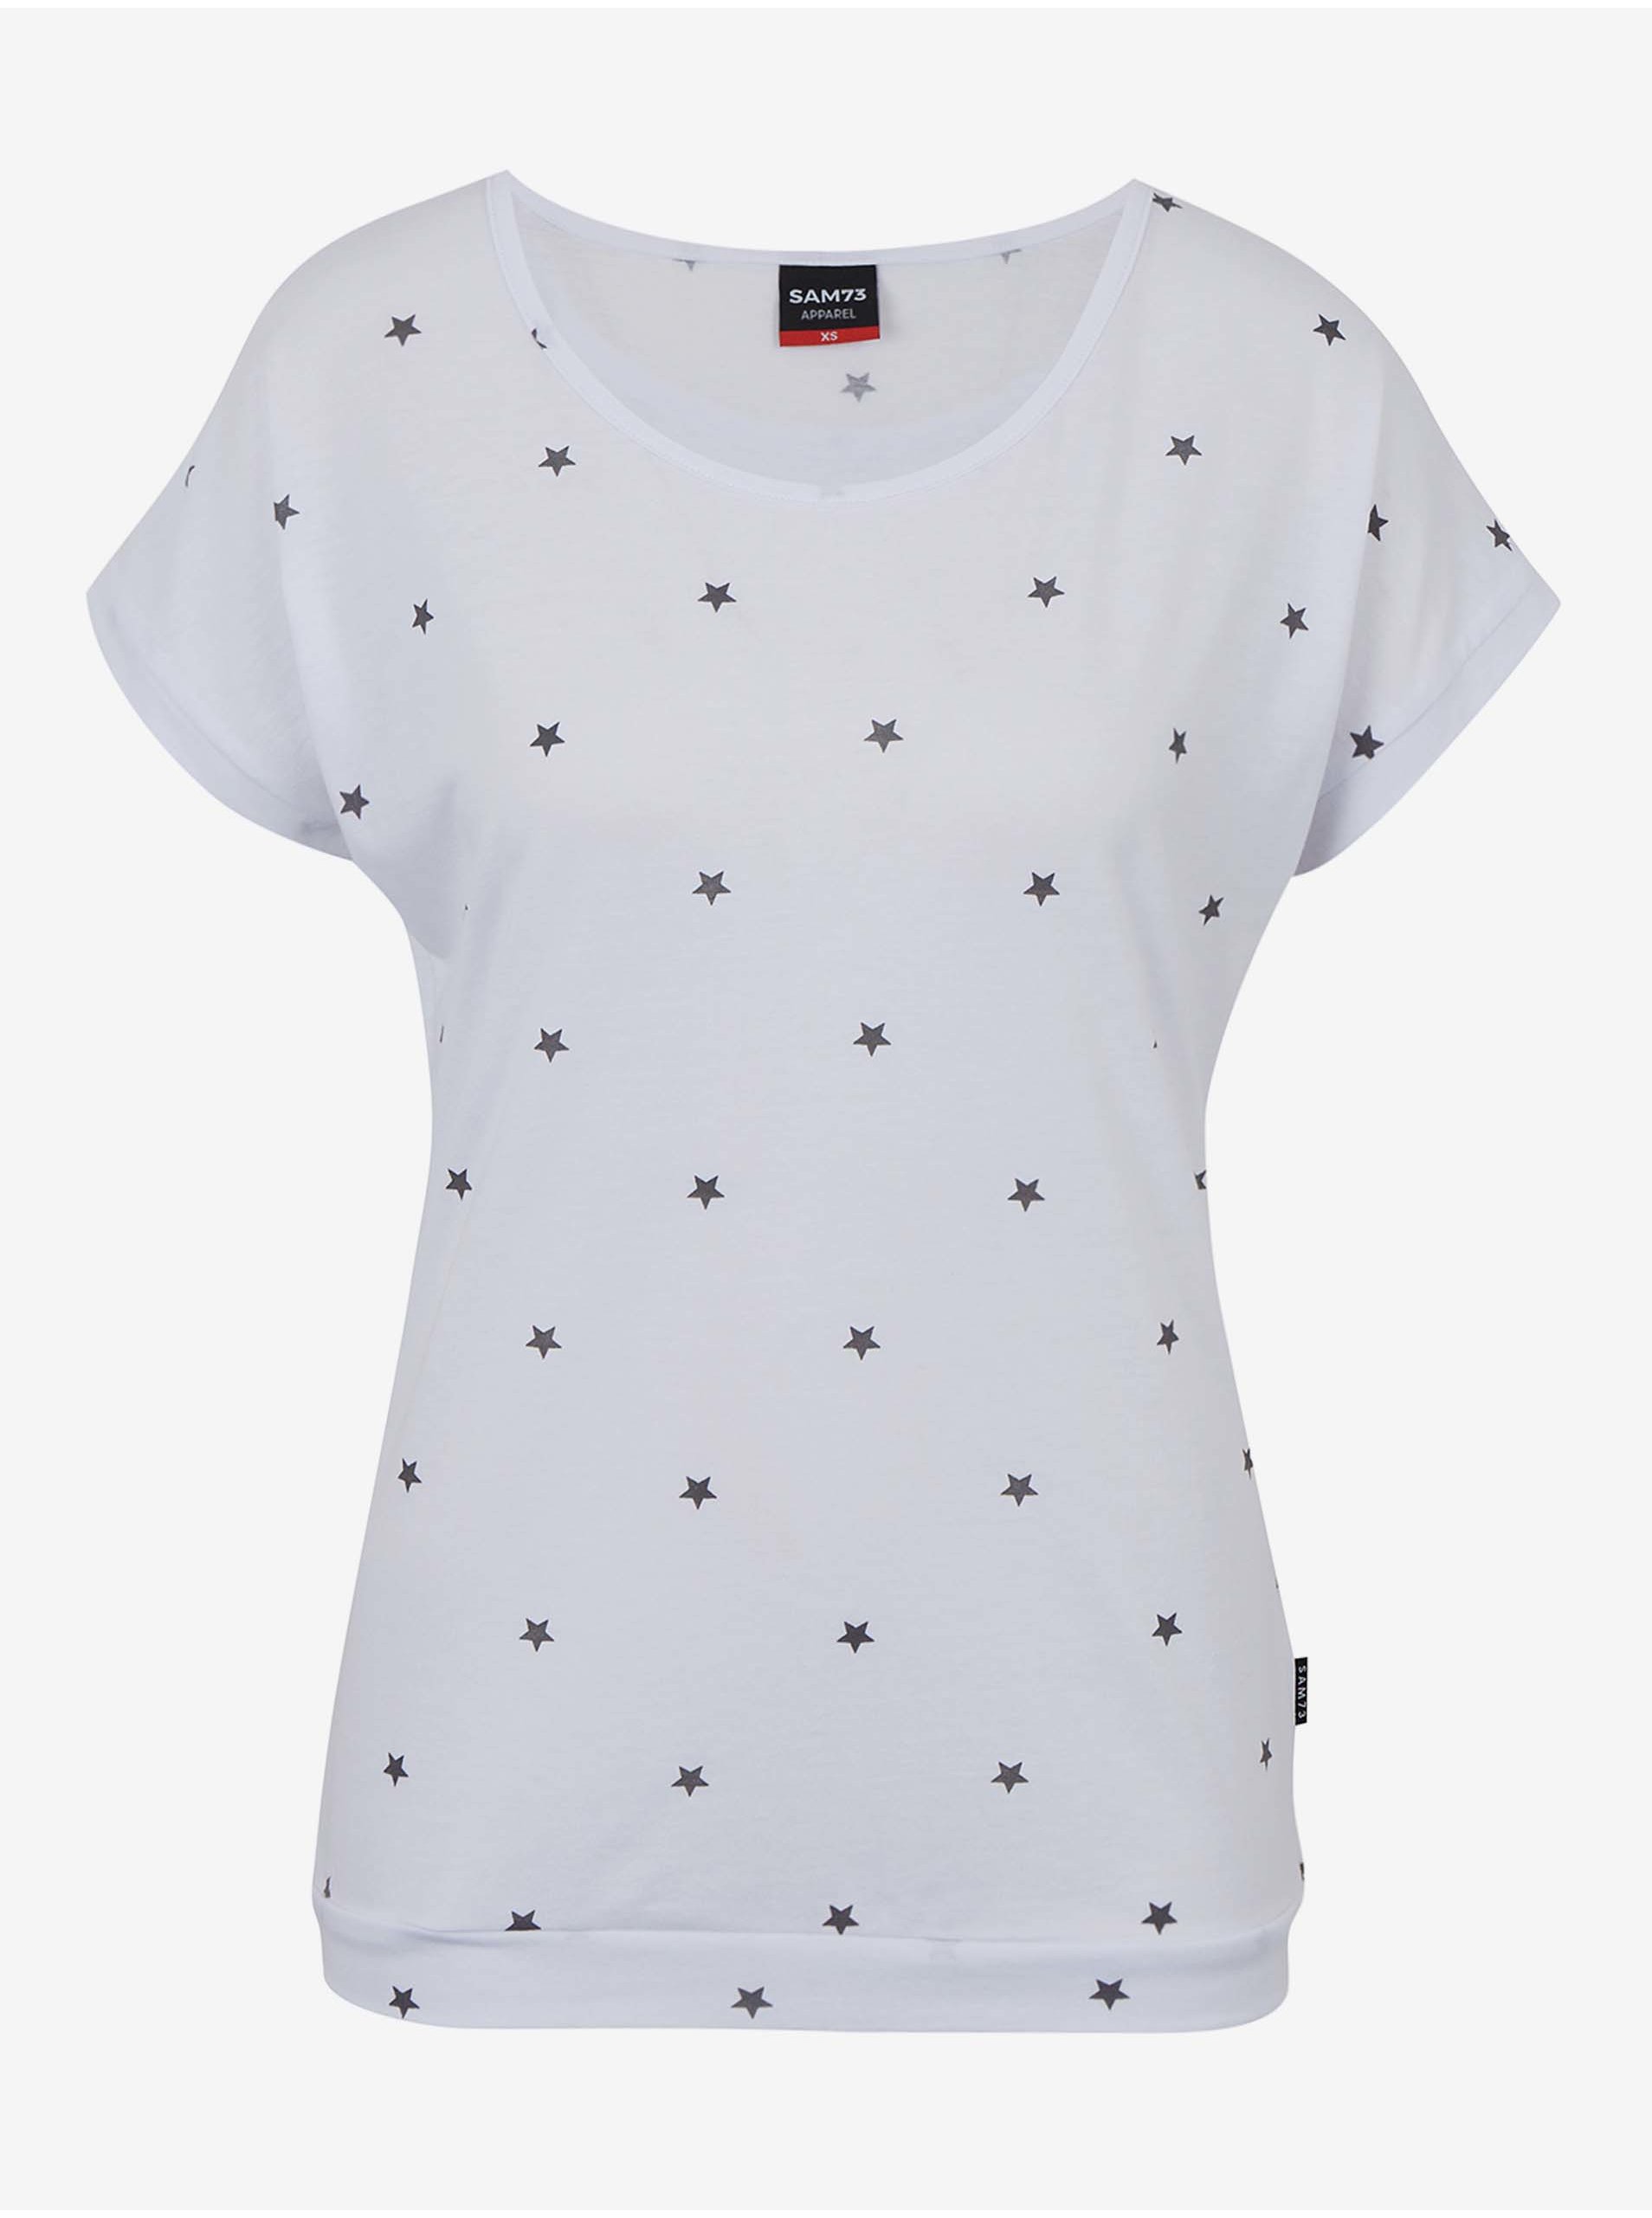 Lacno Biele dámske vzorované tričko SAM 73 Roxanne